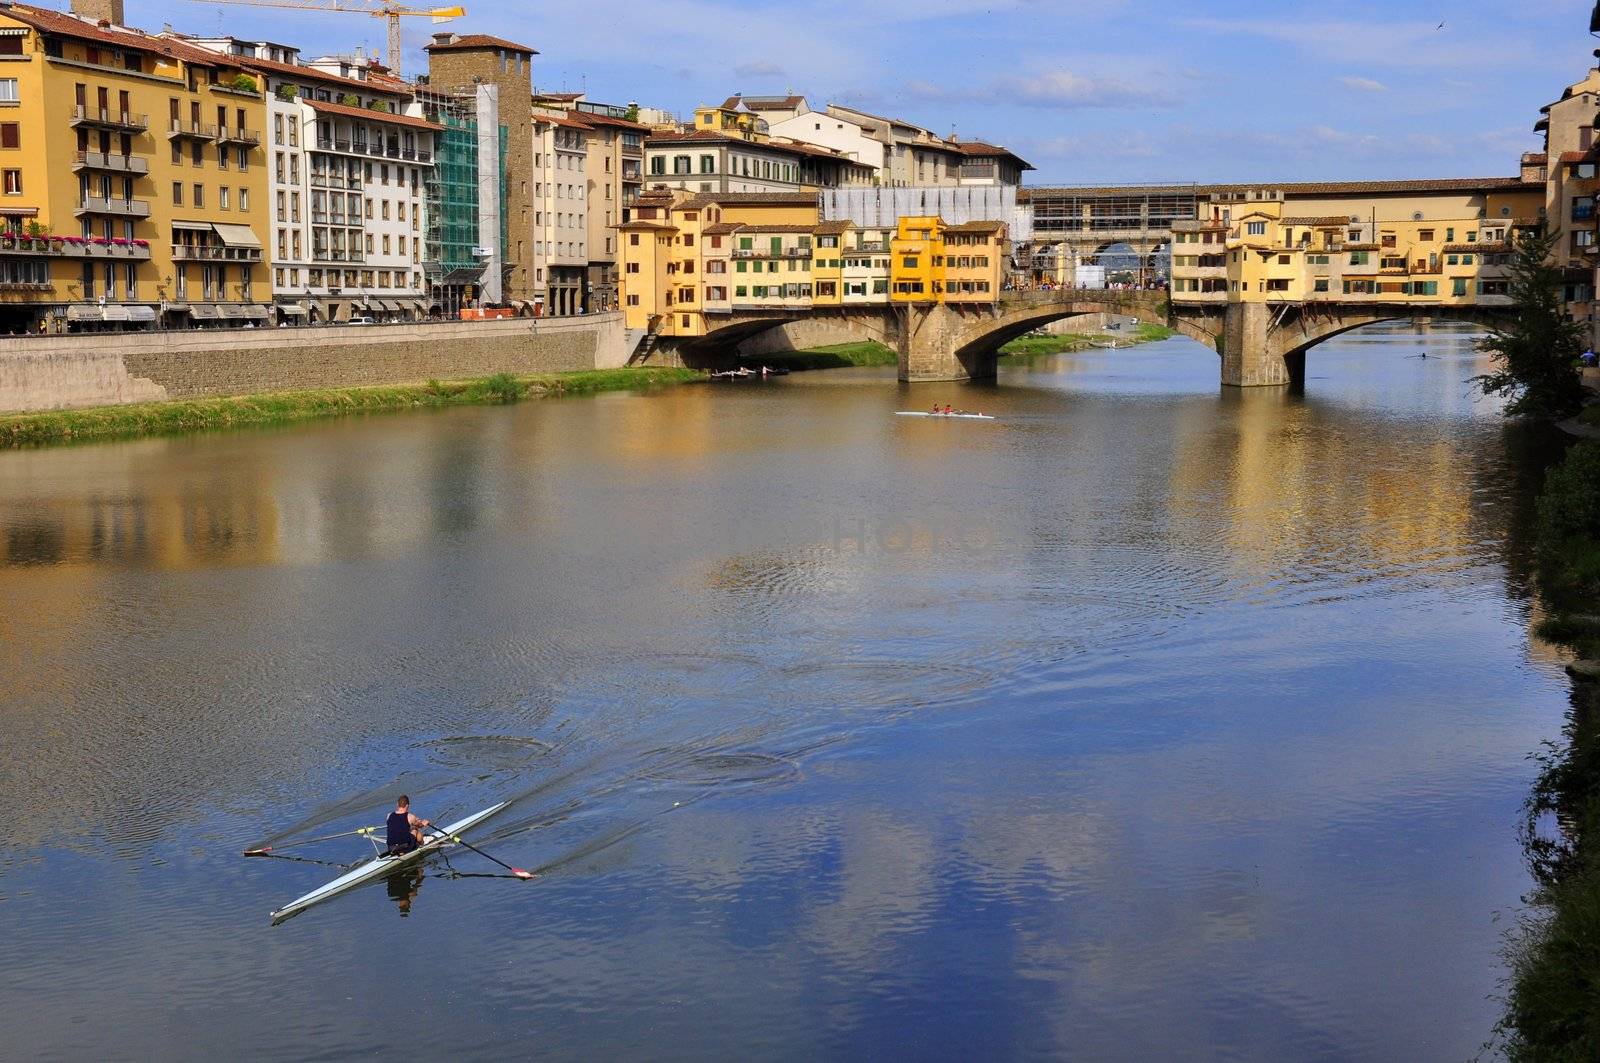 Vecchio Bridge , Florence , Italy by ruigsantos